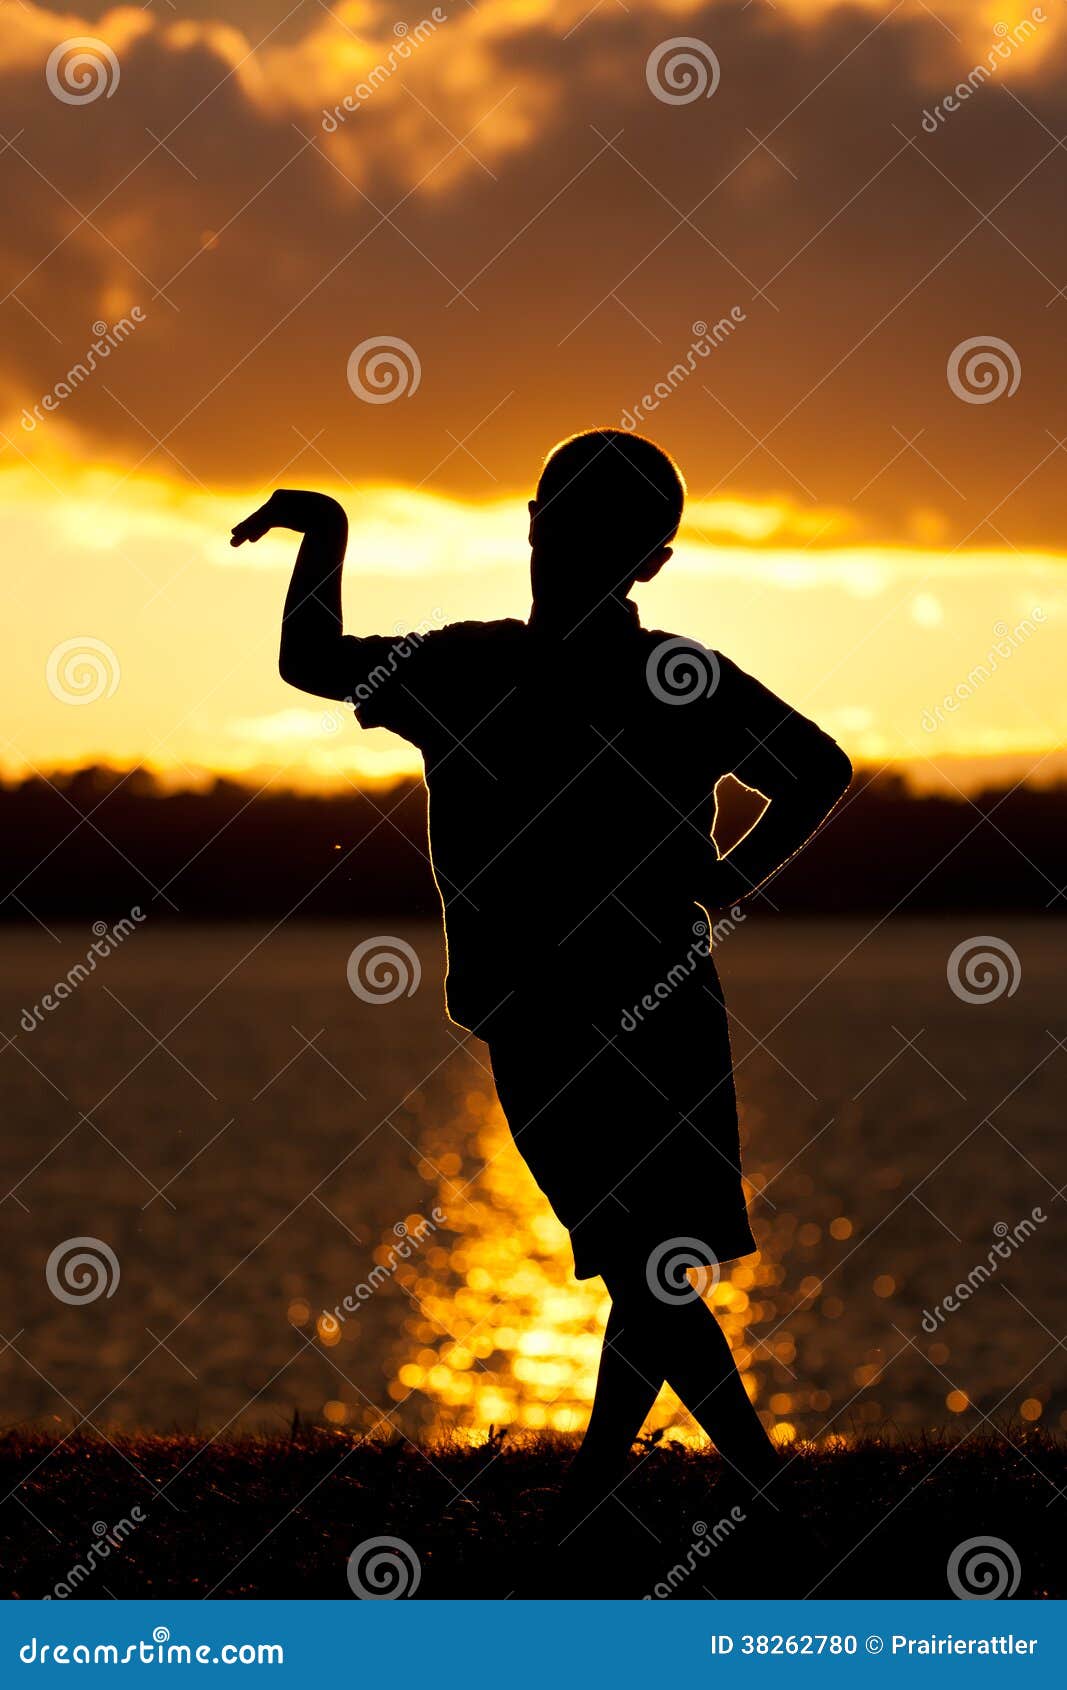 Yoga virabhadrasana warrior pose at sunset - Stock Image - Everypixel